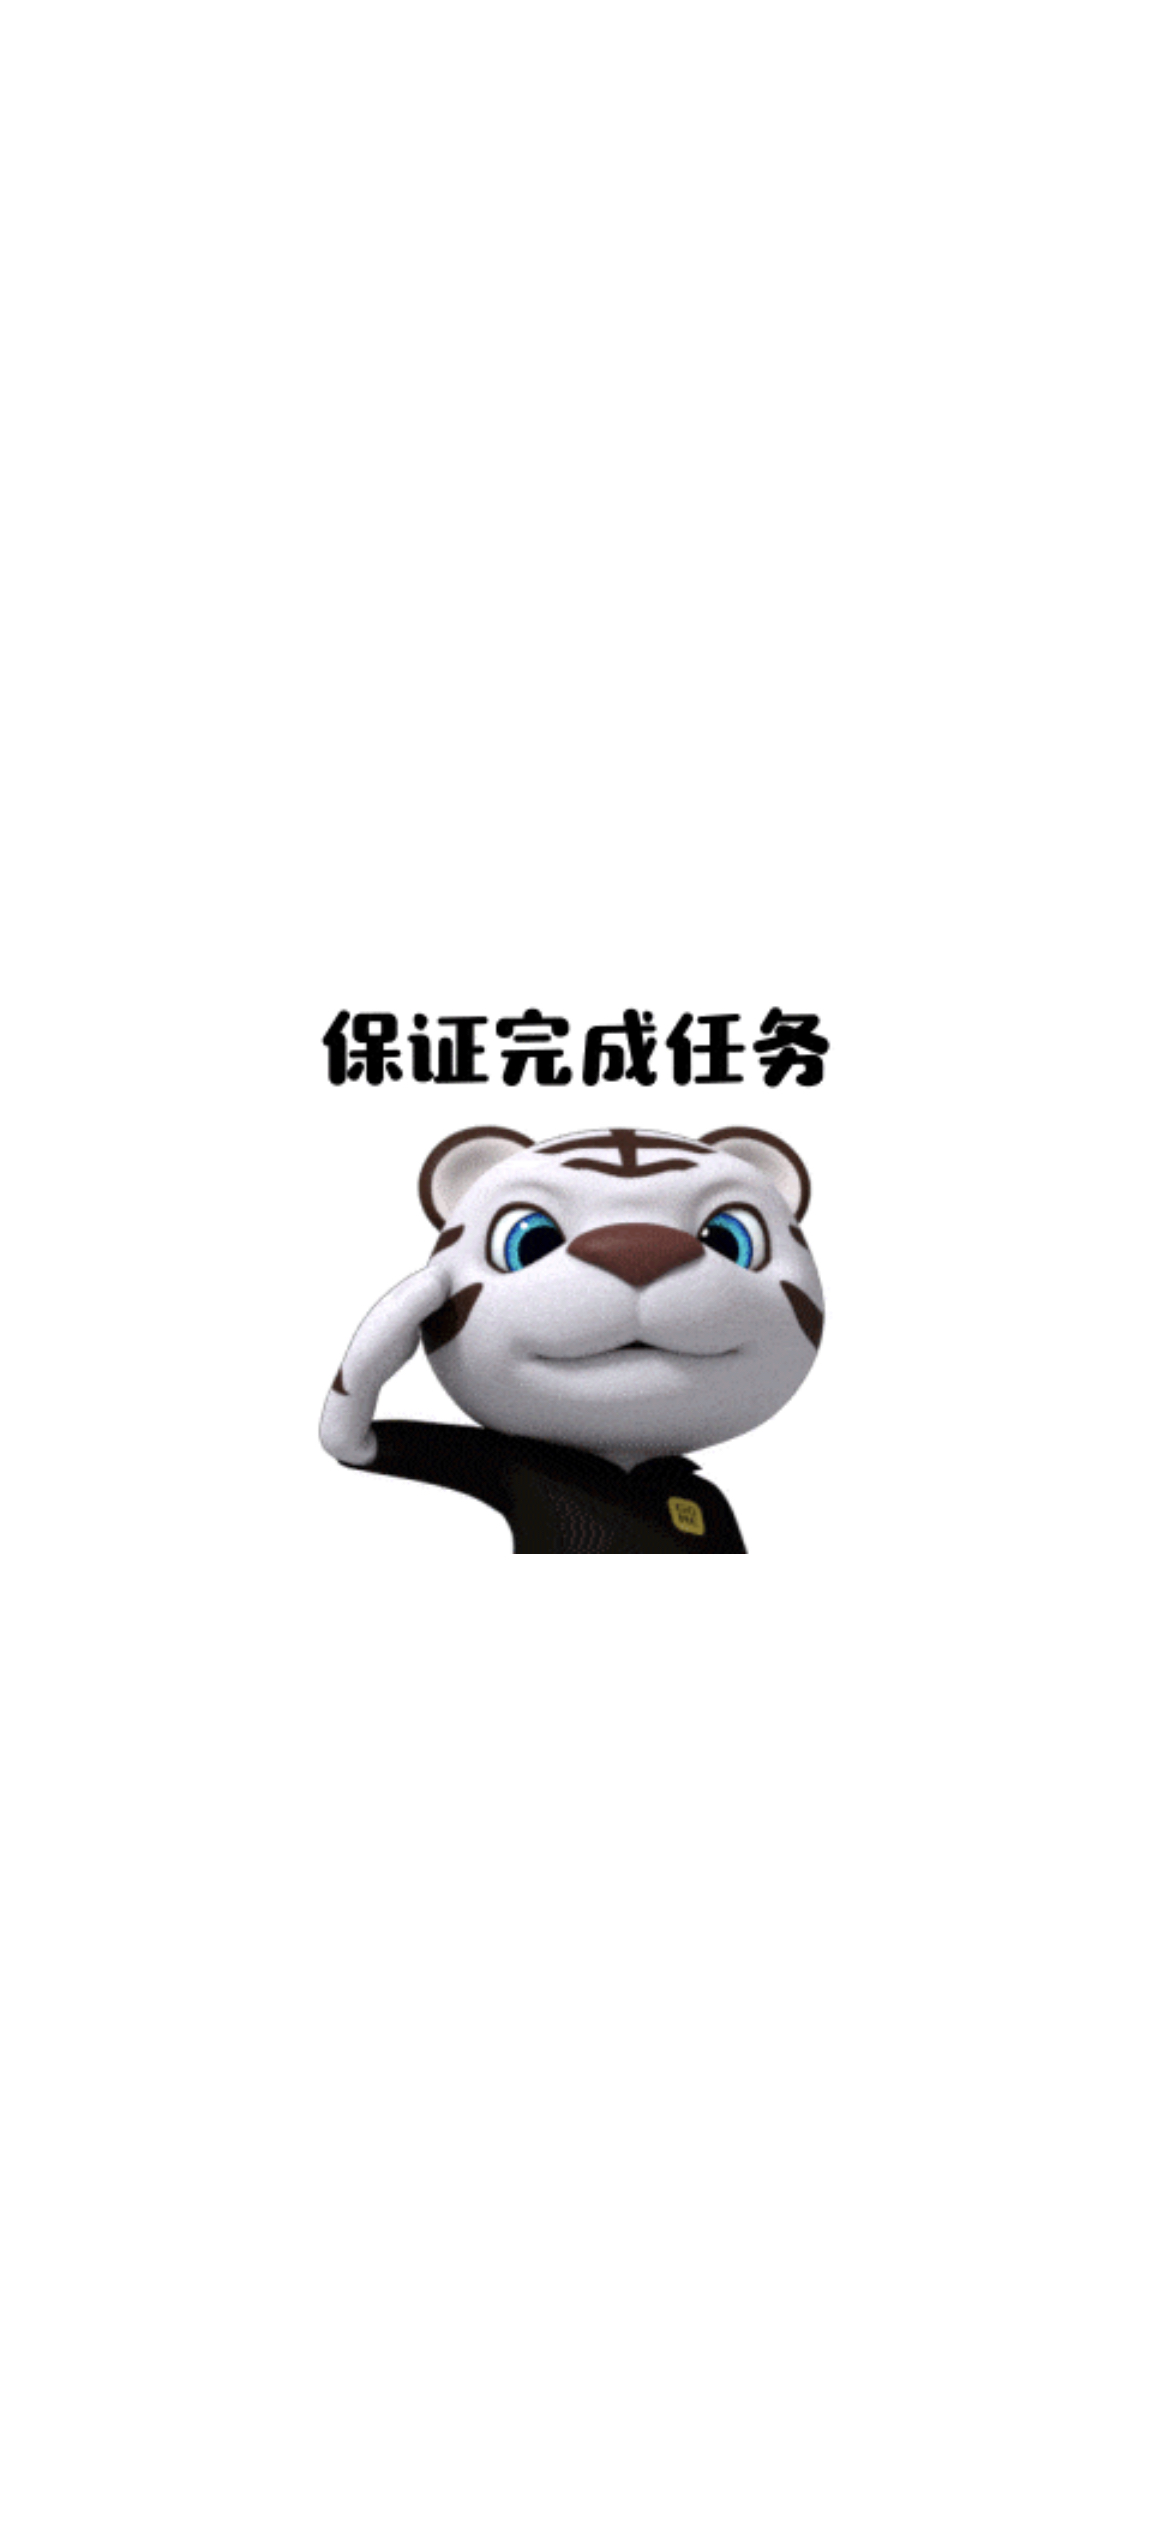 国美小老虎logo图片